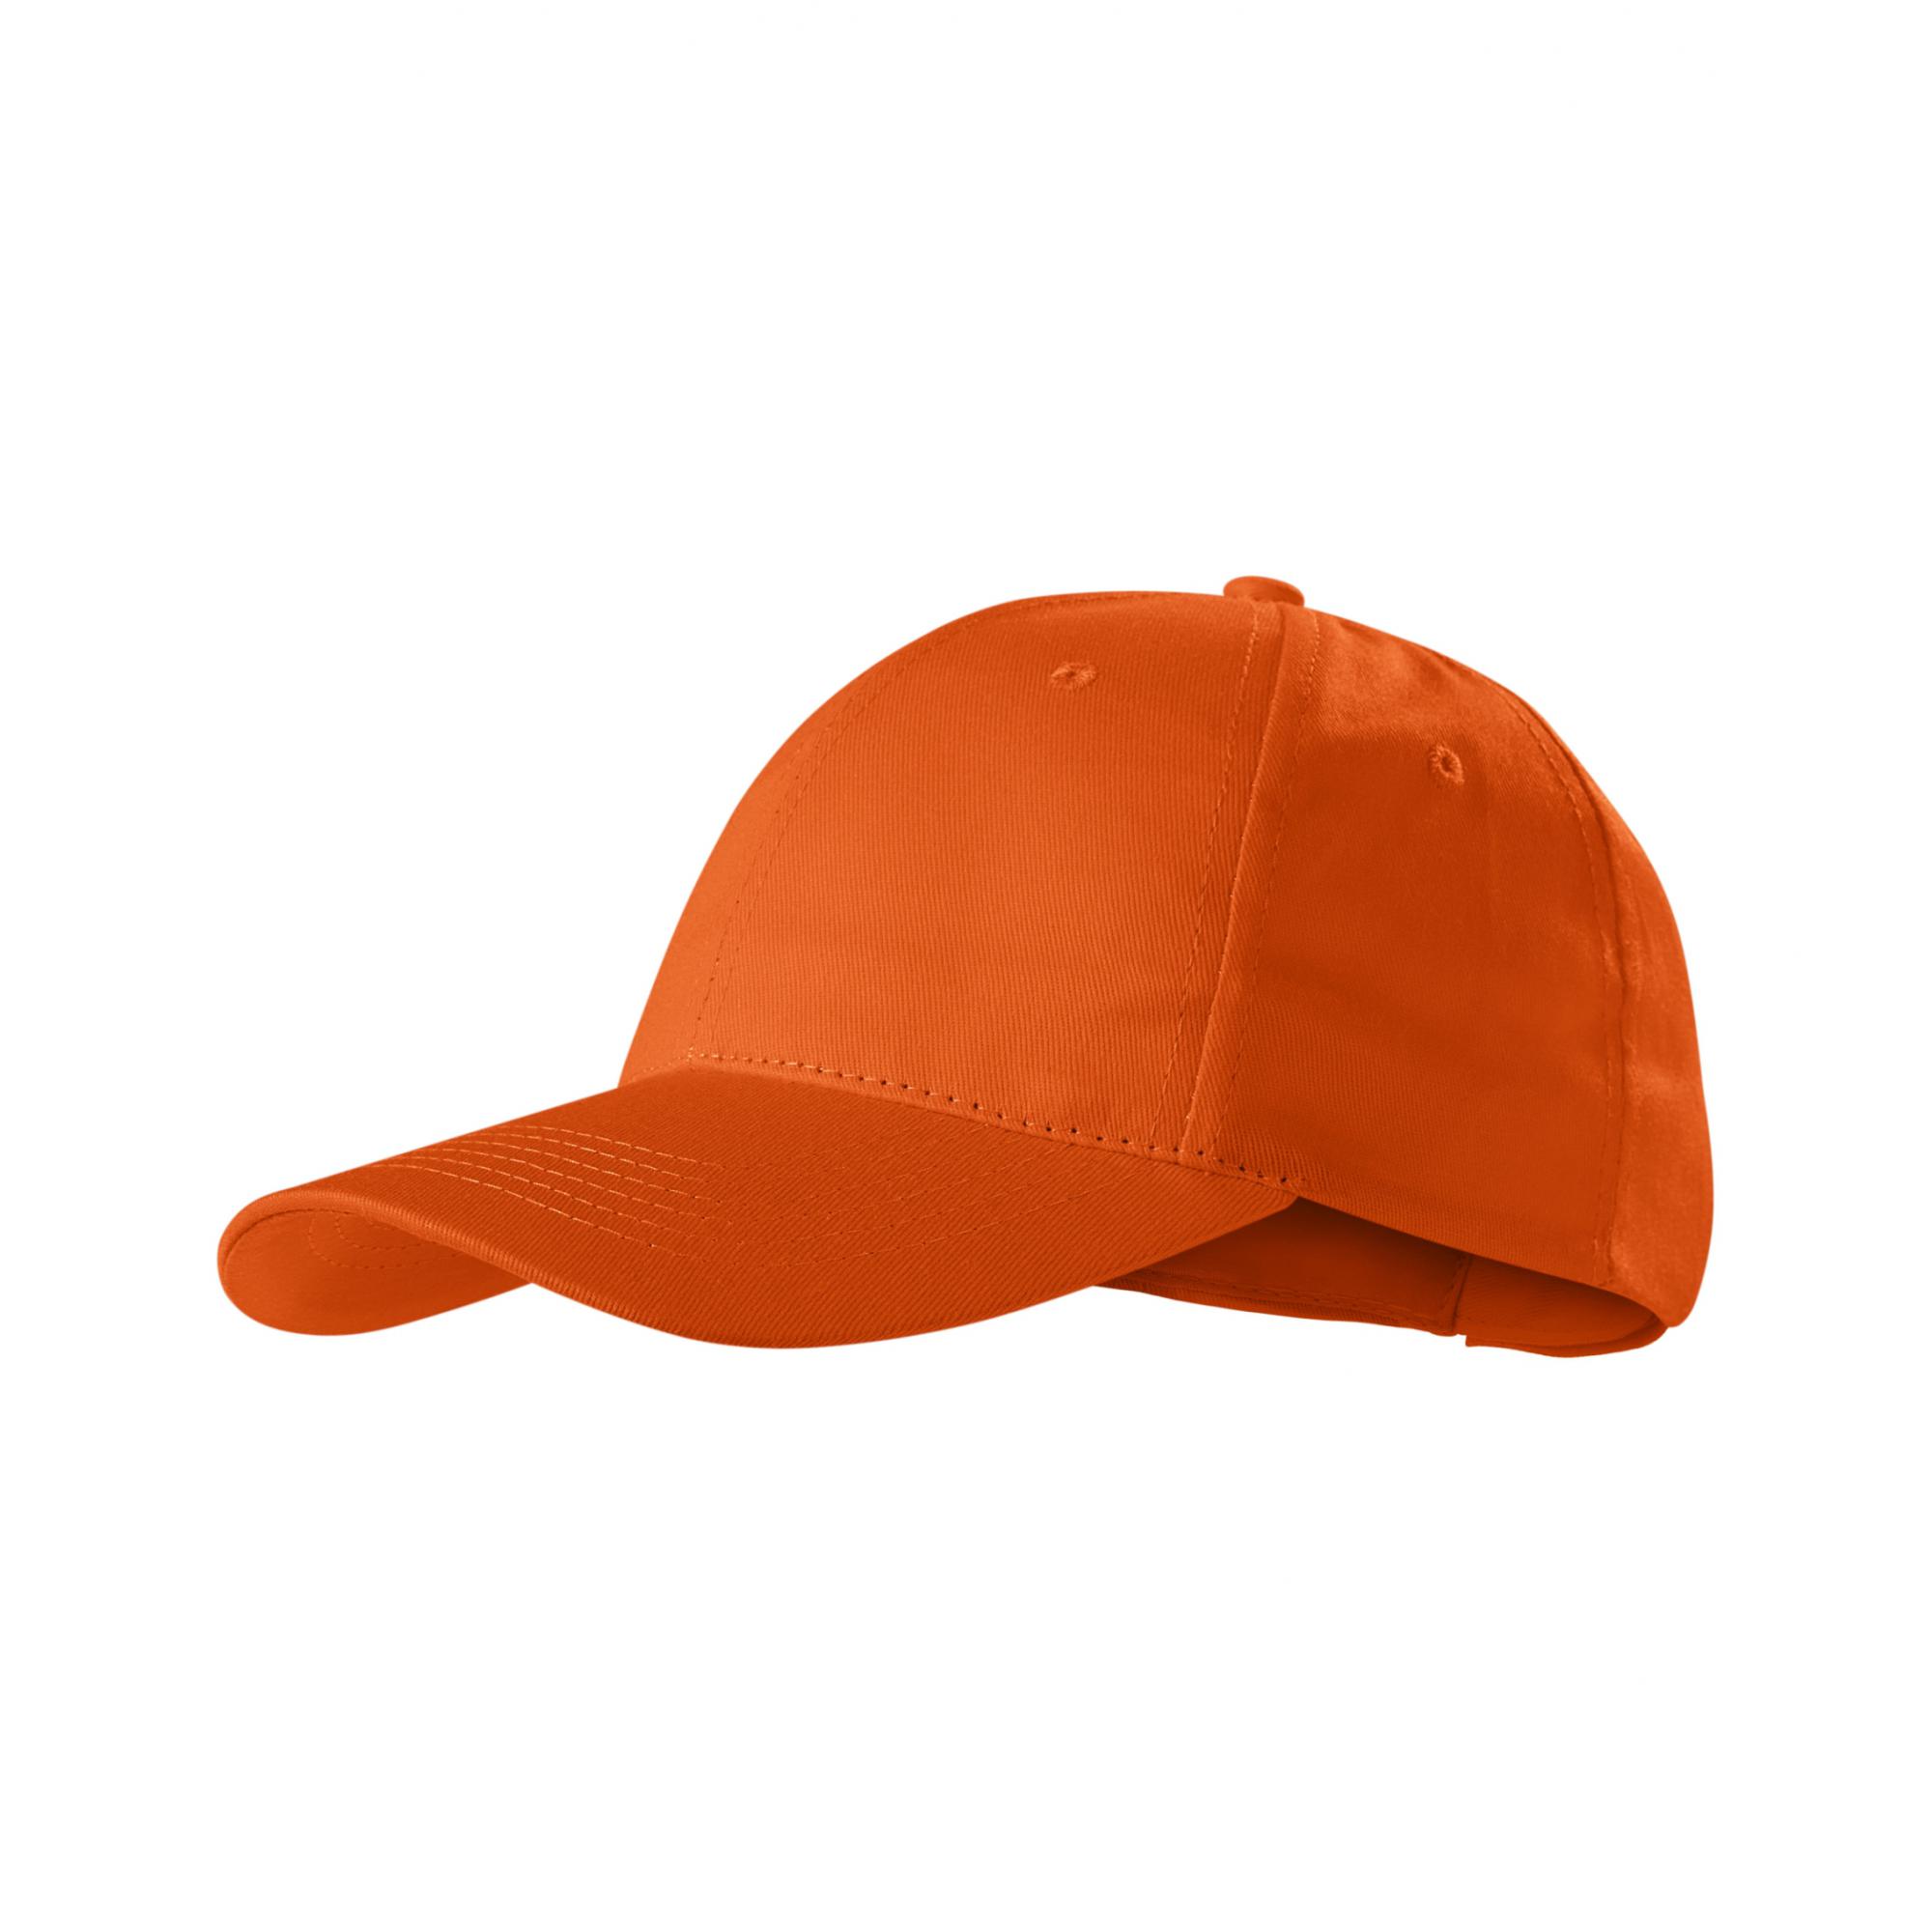 Şapcă unisex Sunshine P31 Portocaliu Marime universala